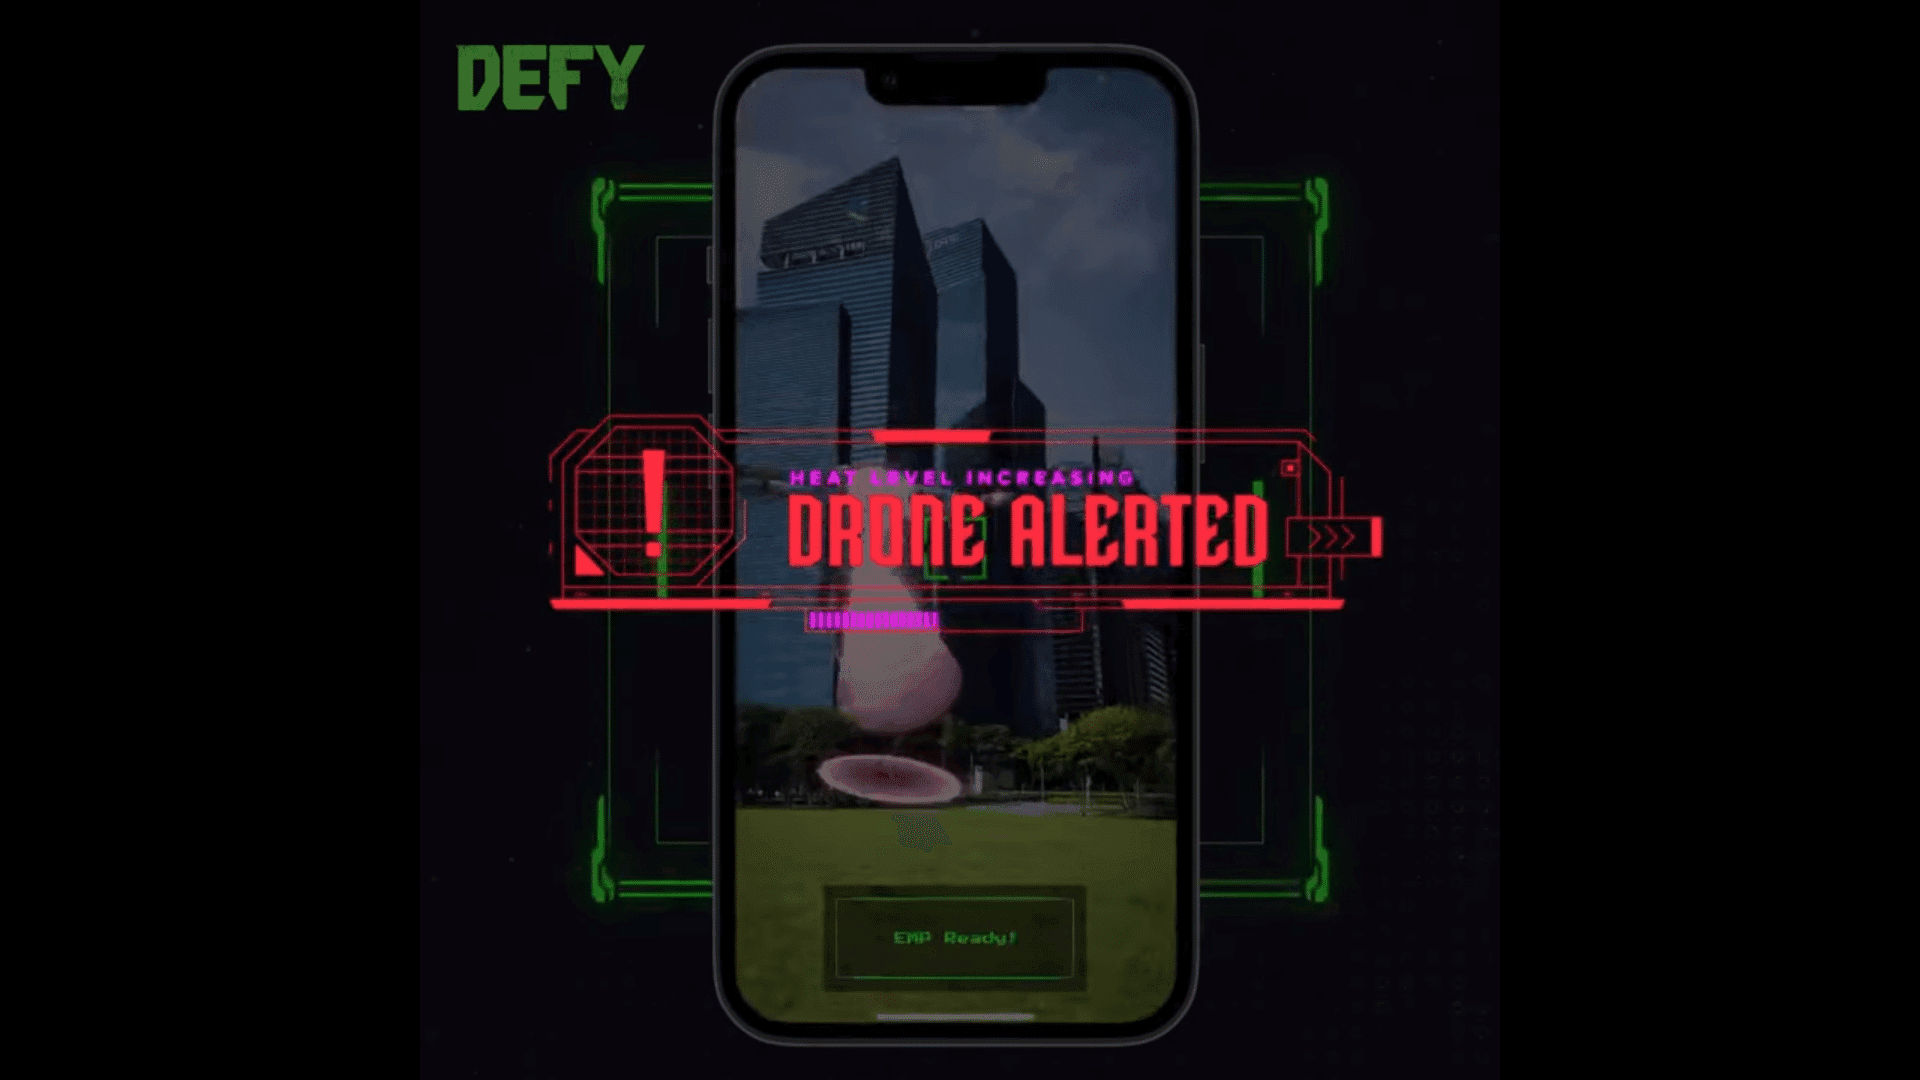 DEFY is een mobiele game die elementen uit de virtuele en fysieke wereld combineert om een meeslepende metaverse-ervaring te bieden.